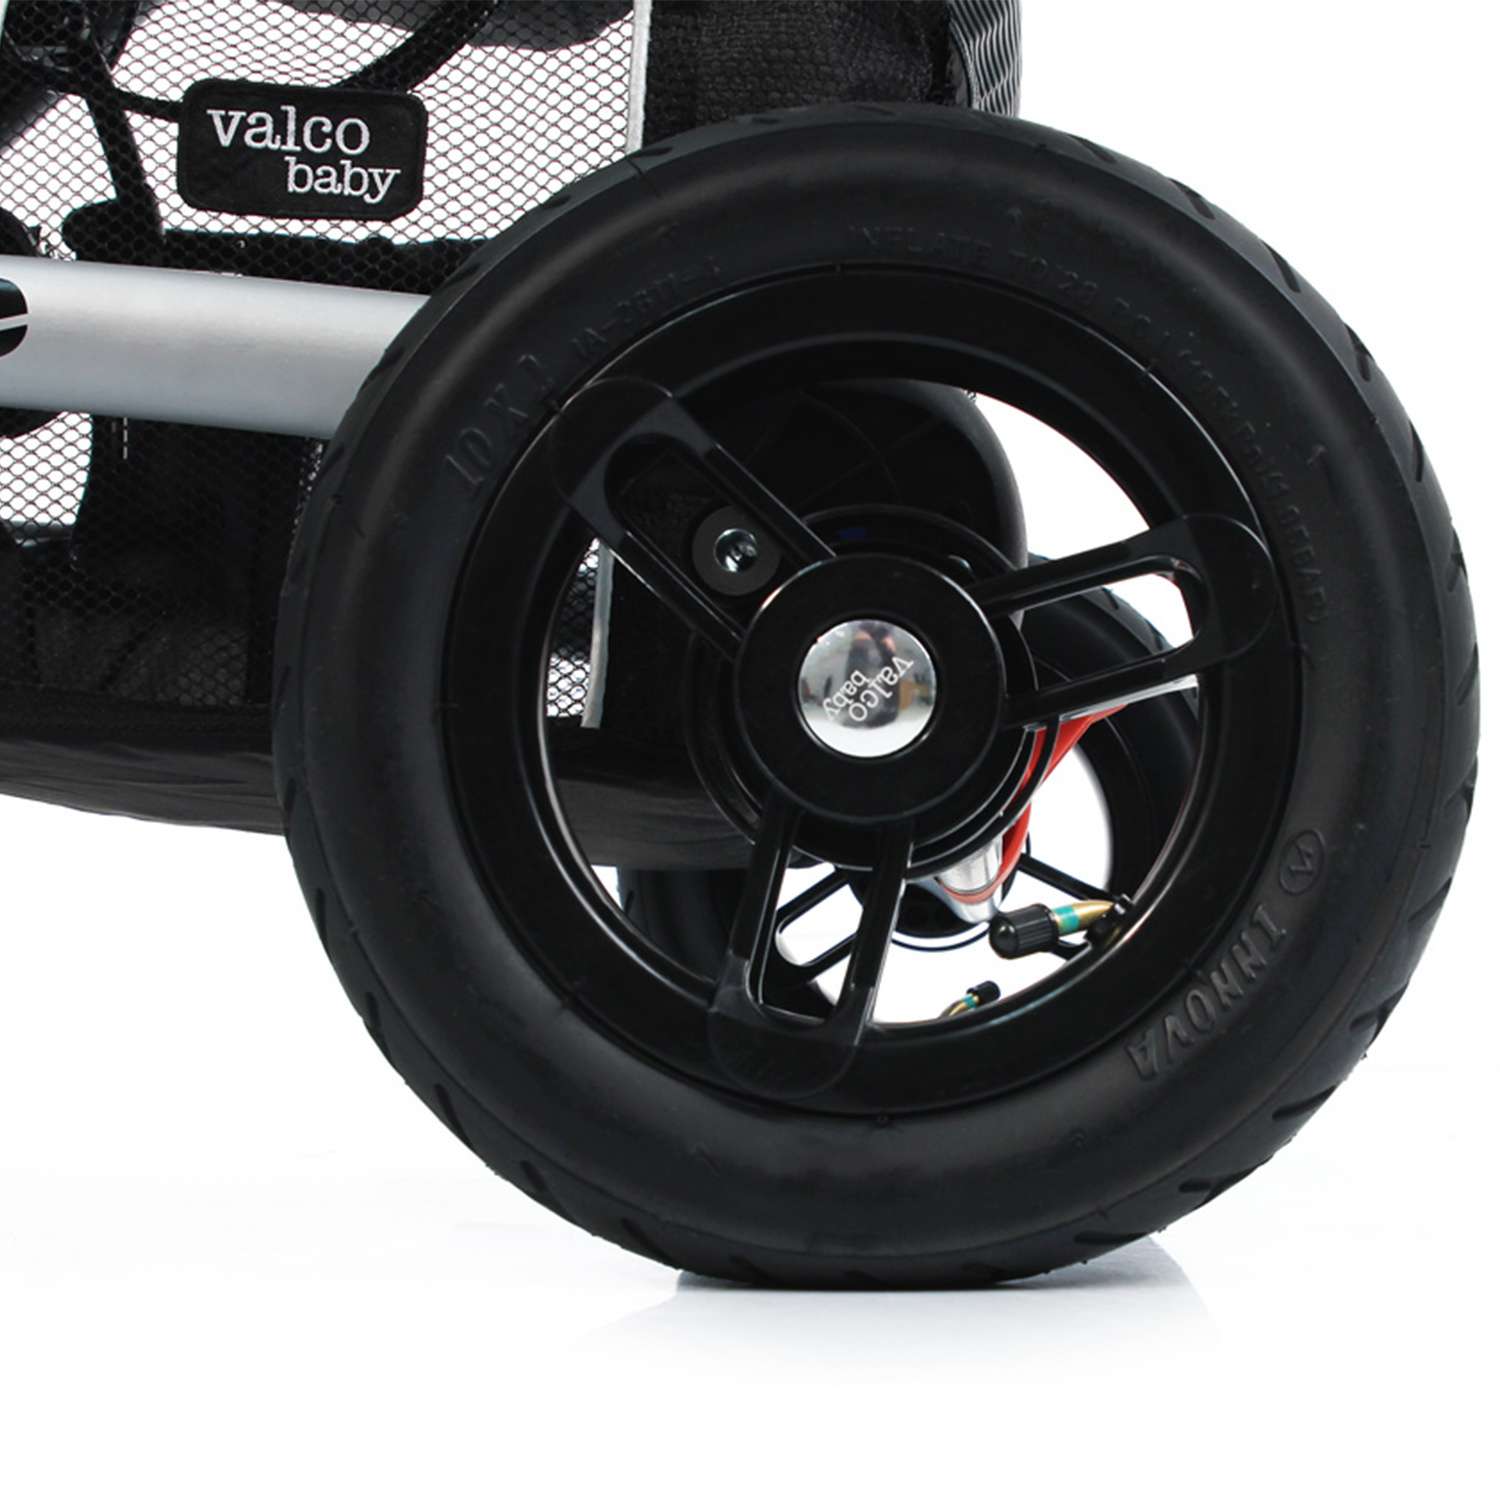 Пневмо колесо Valco baby для коляски ZeeBlack 2 шт 9138 - фото 2